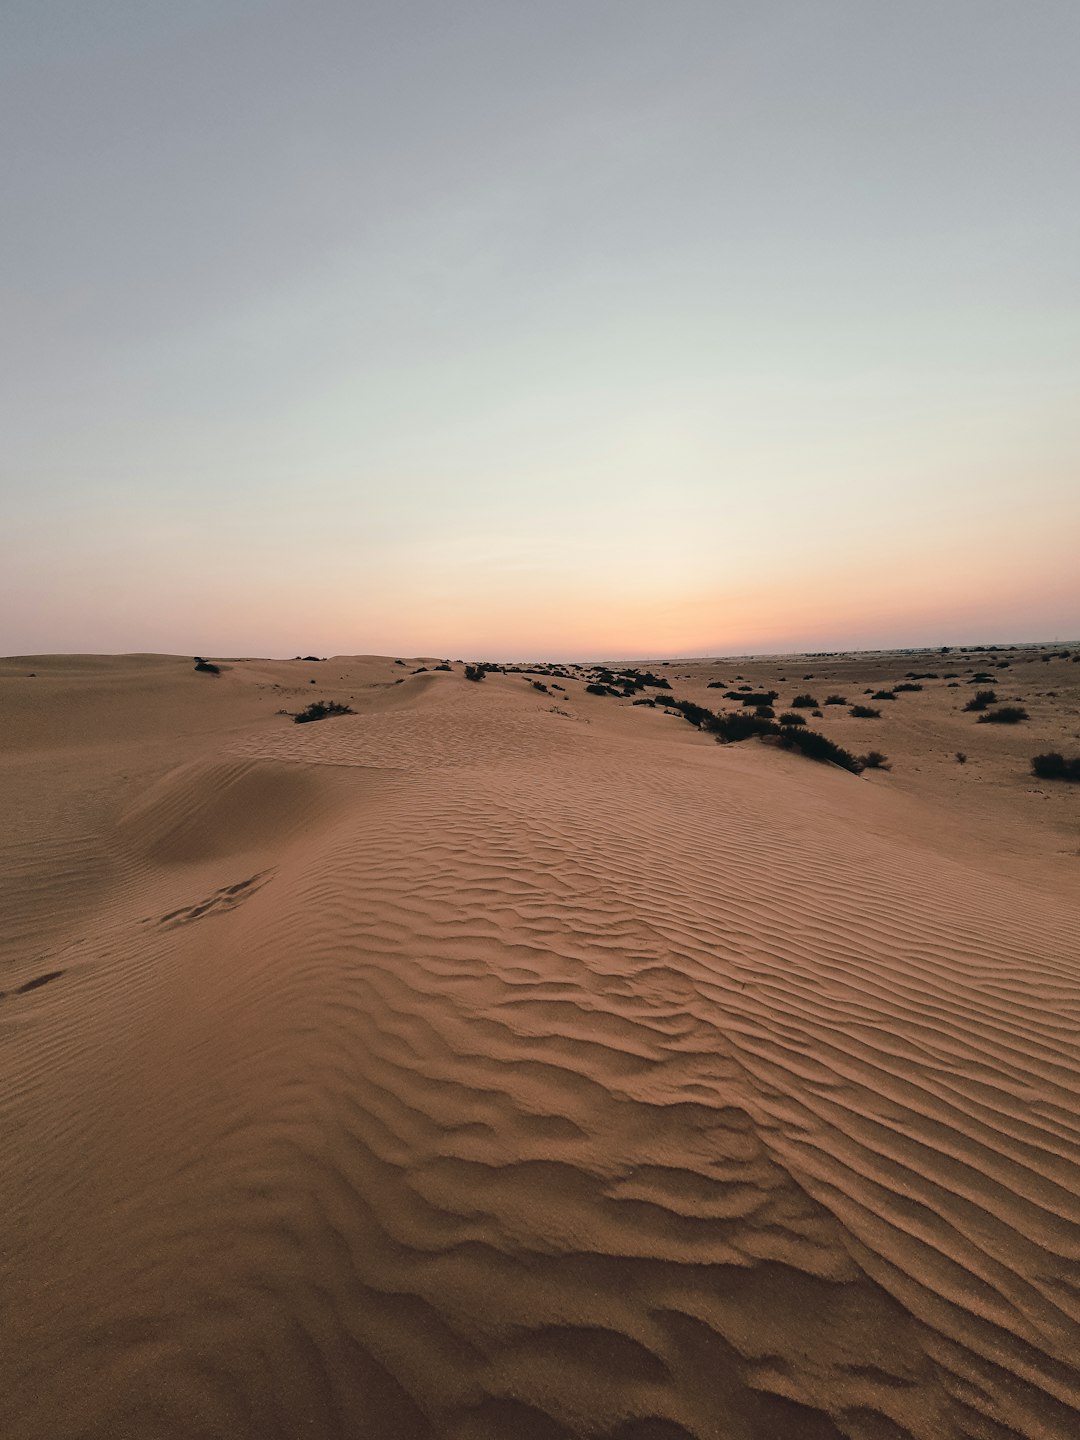 Desert photo spot Shahamah - Abu Dhabi - United Arab Emirates Abu Dhabi - United Arab Emirates